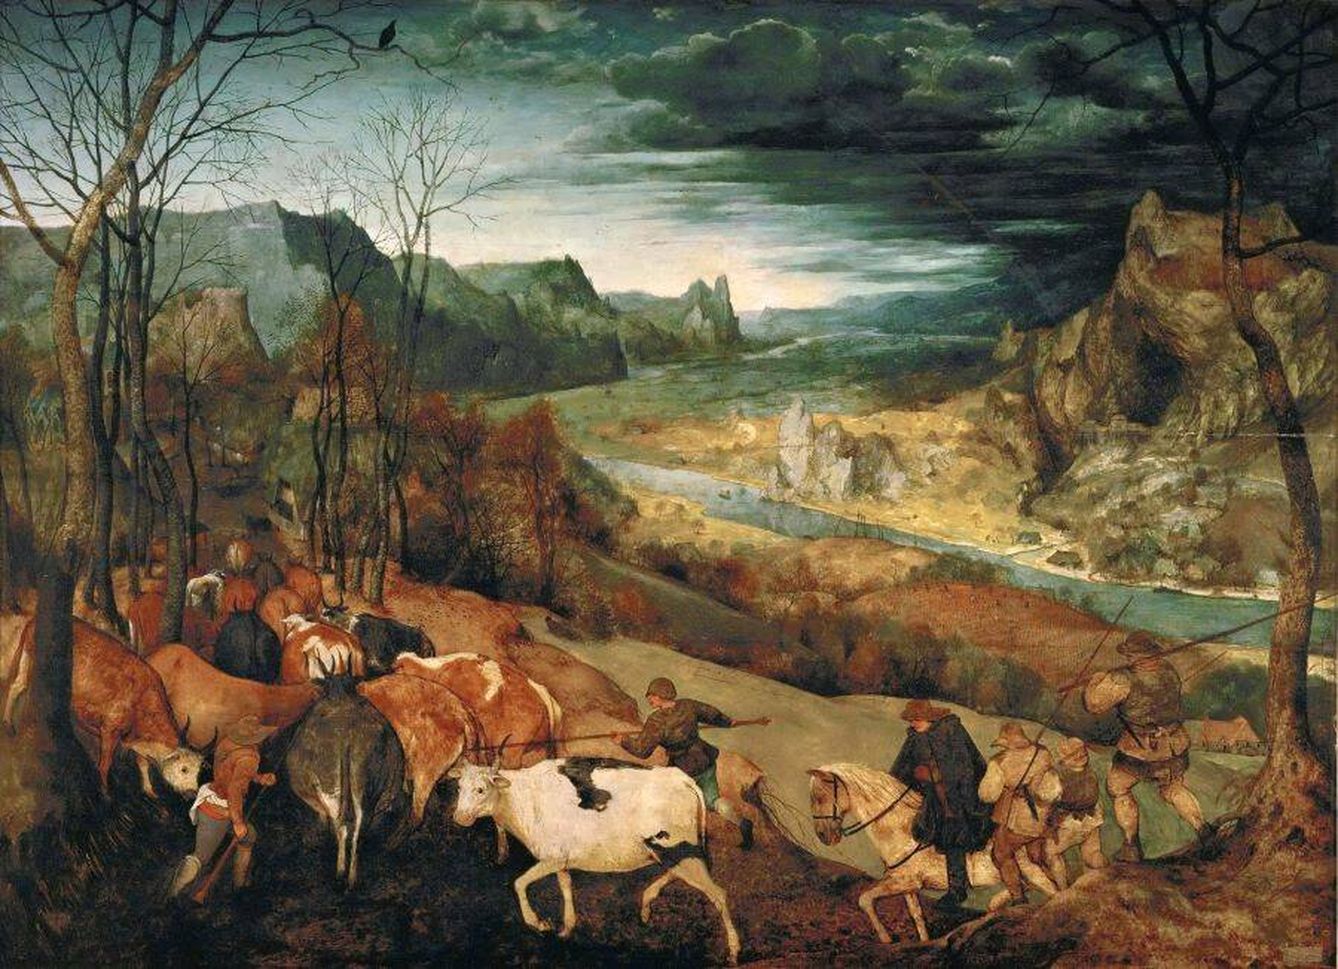 Regreso de la manada. Peter Brueghel, el viejo. 1565. Kunsthistorisches Museum